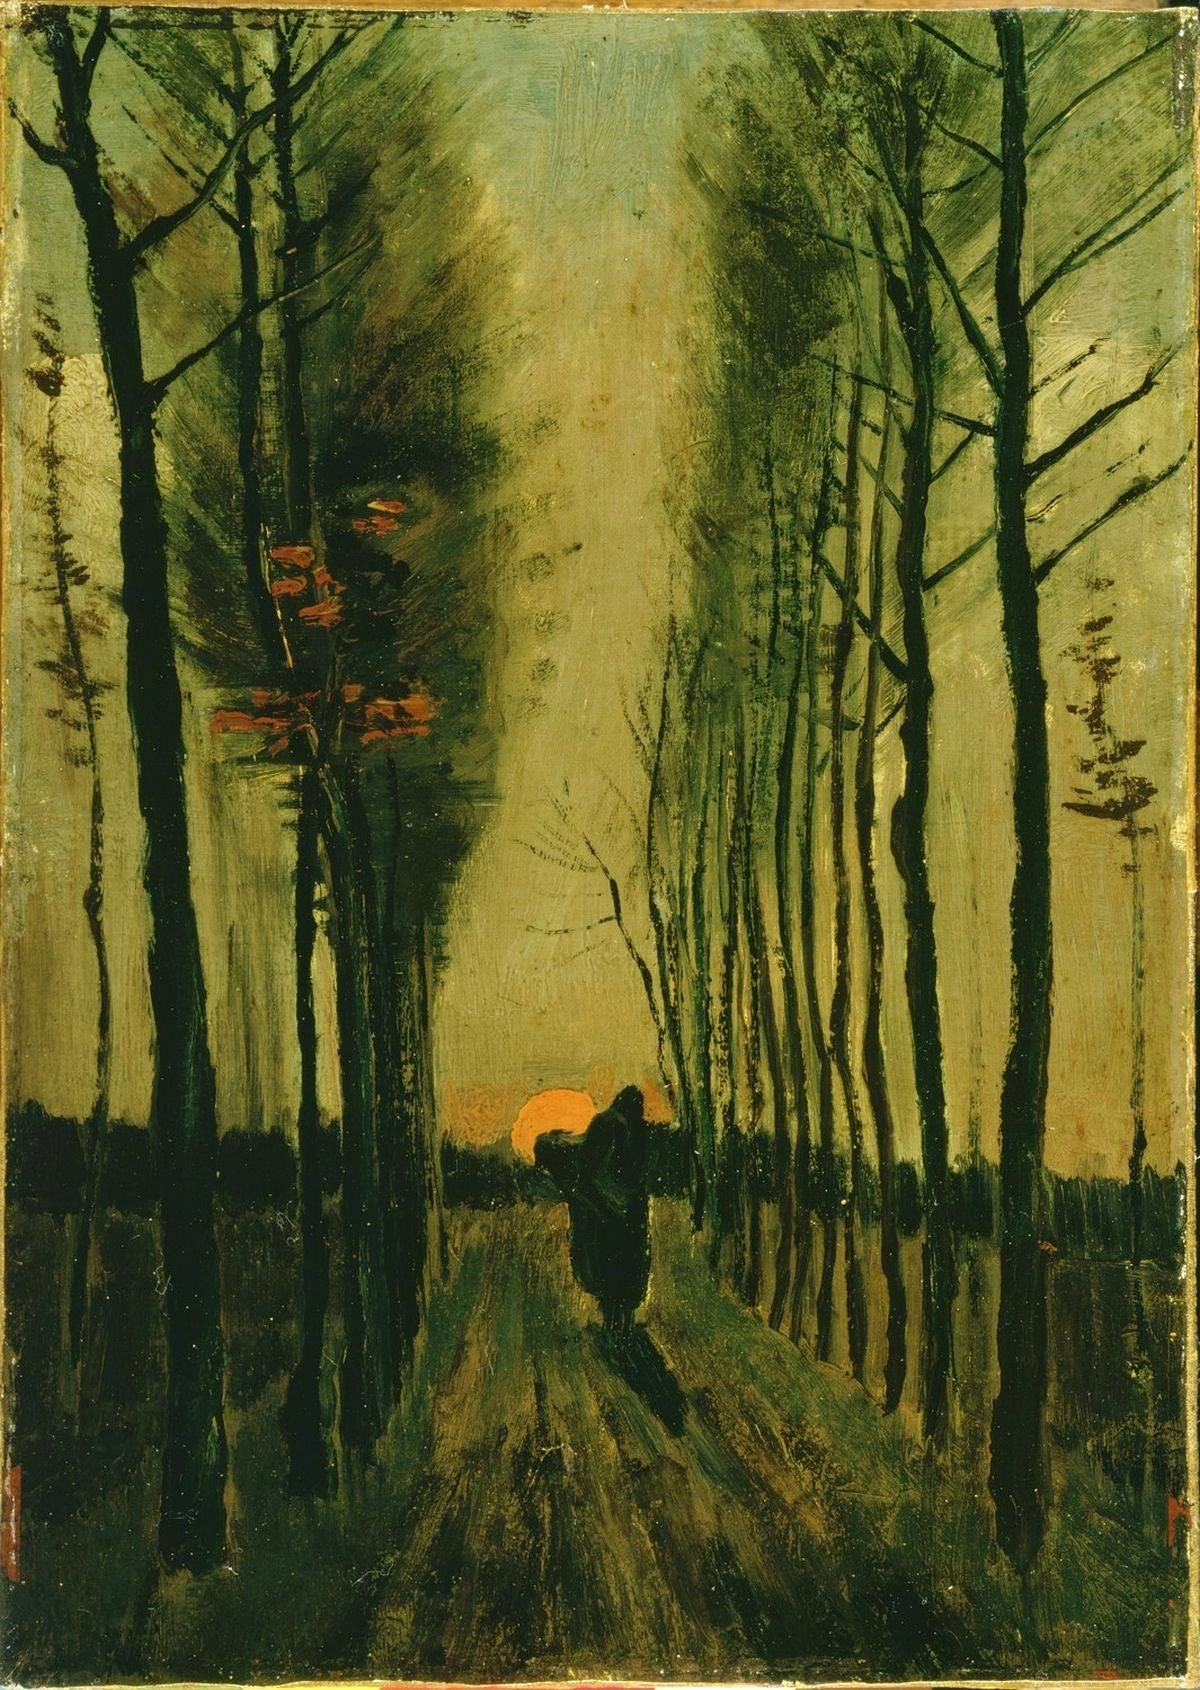 Lane of Poplars at Sunset, 1887